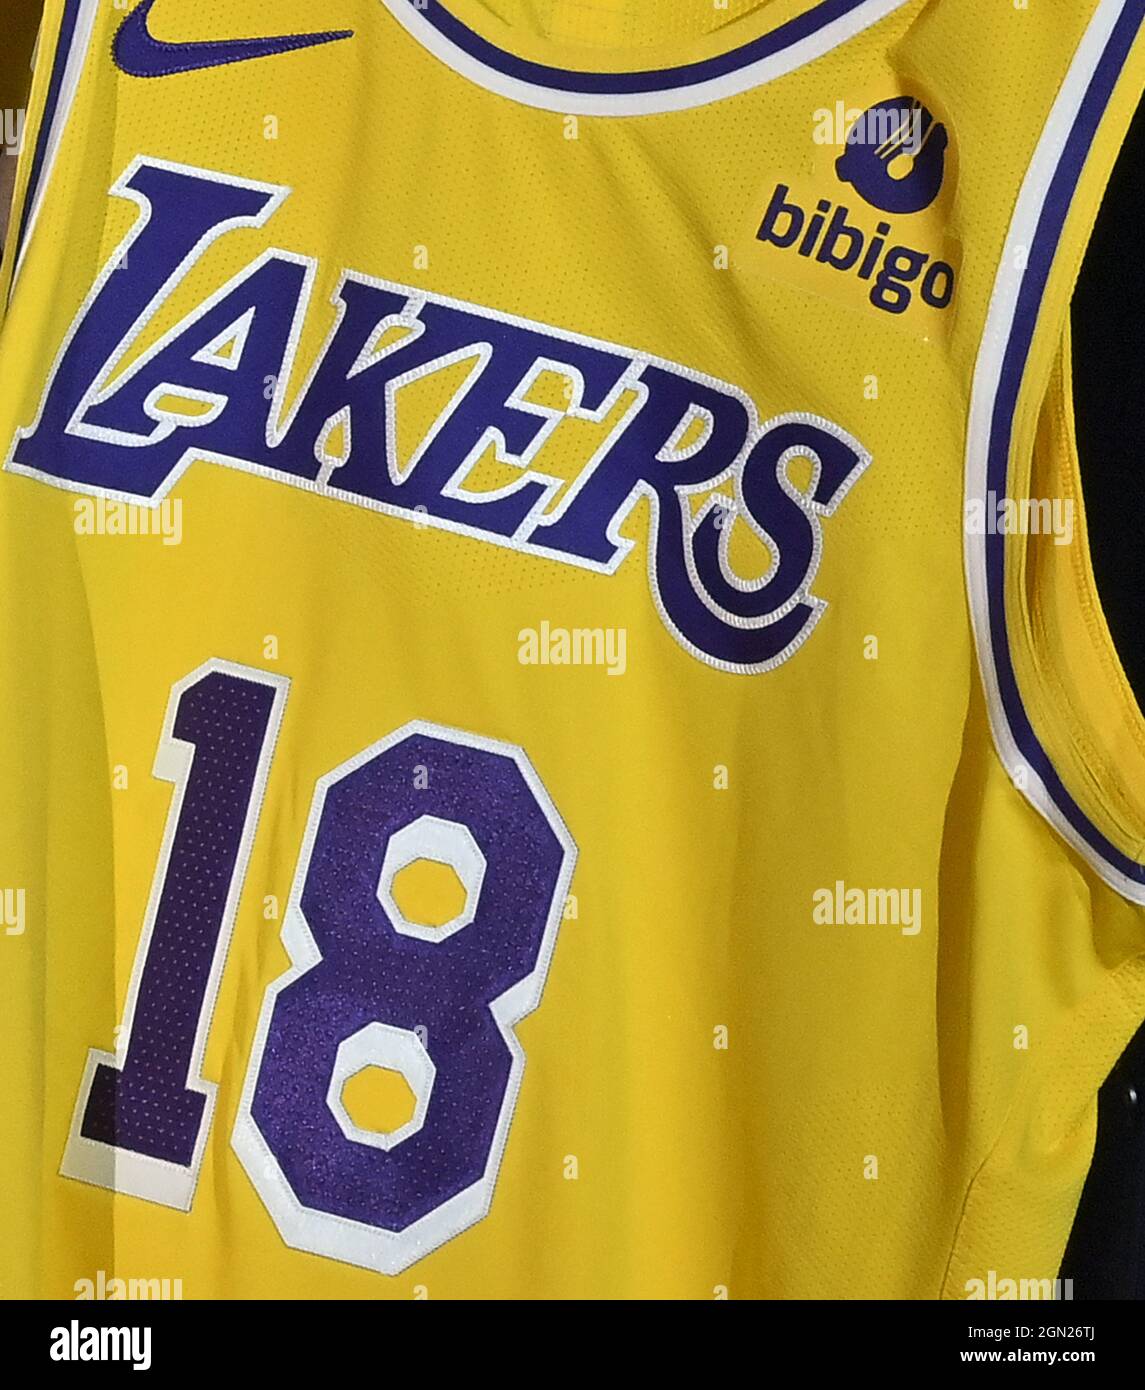 Una nueva camiseta Los Angeles Lakers con un parche Bibigo se ve durante el evento inicial del equipo anunciar una nueva asociación de marketing global con Bibigo, una popular compañía